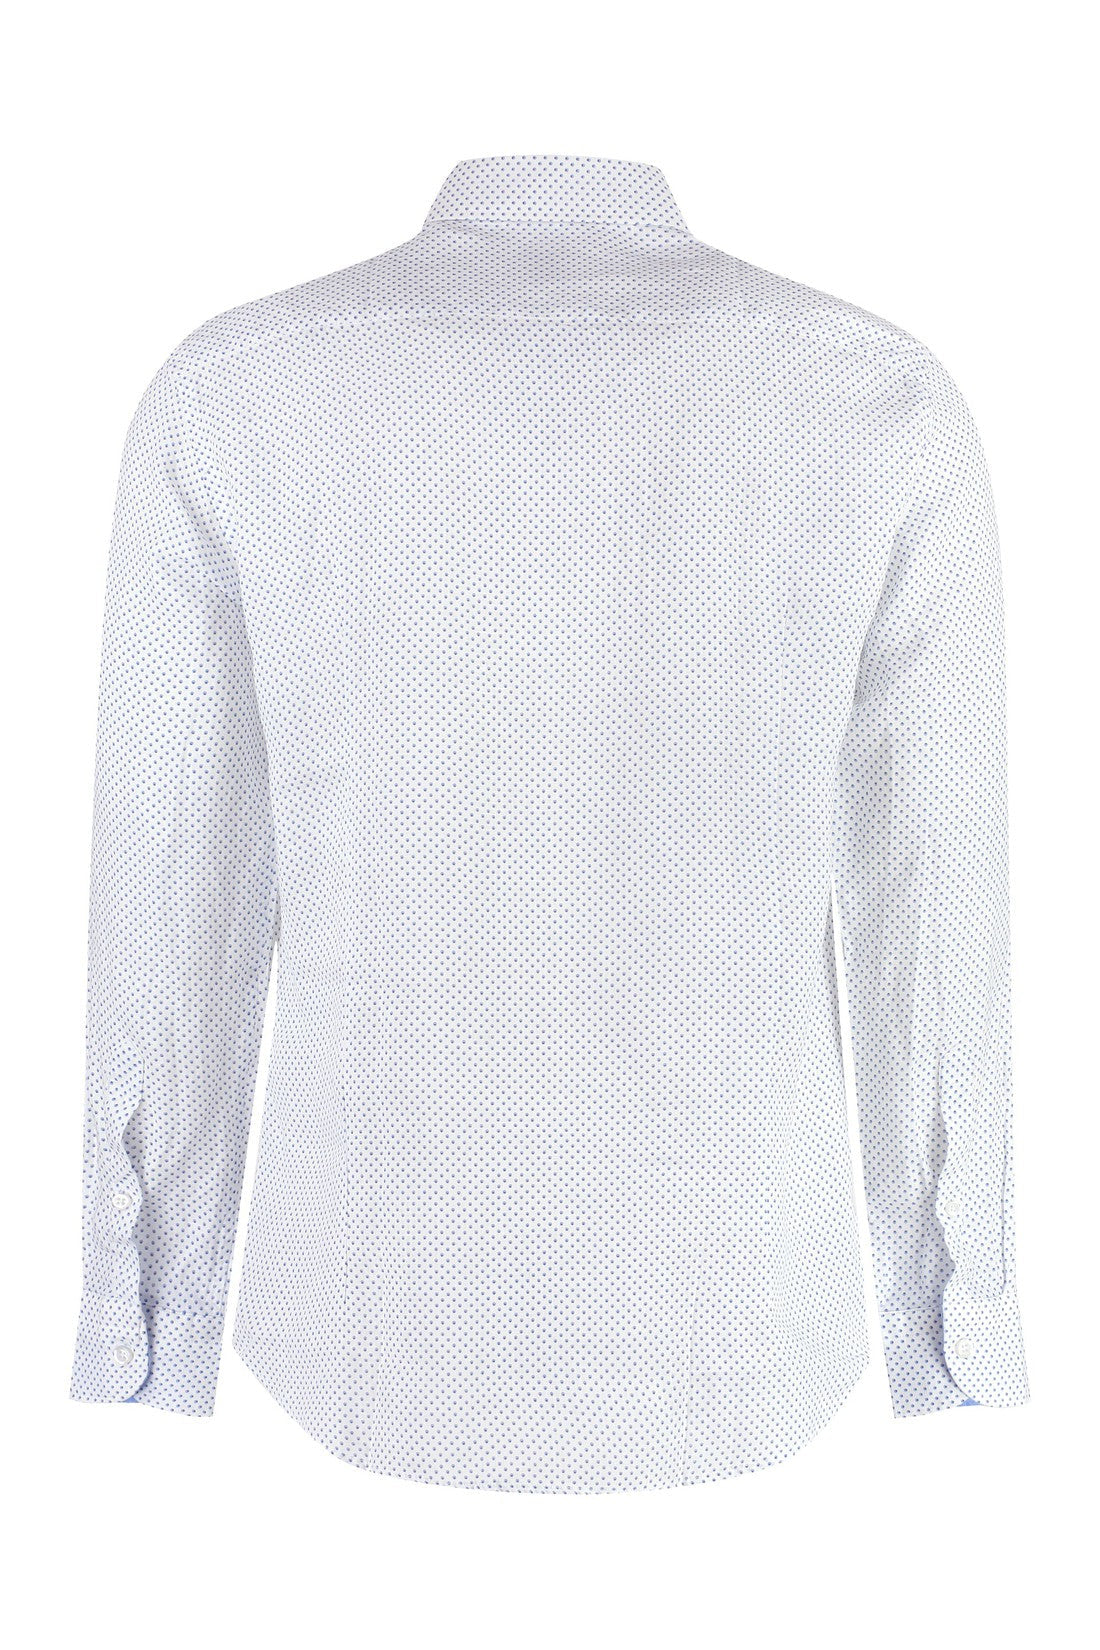 Piralo-OUTLET-SALE-Printed cotton shirt-ARCHIVIST